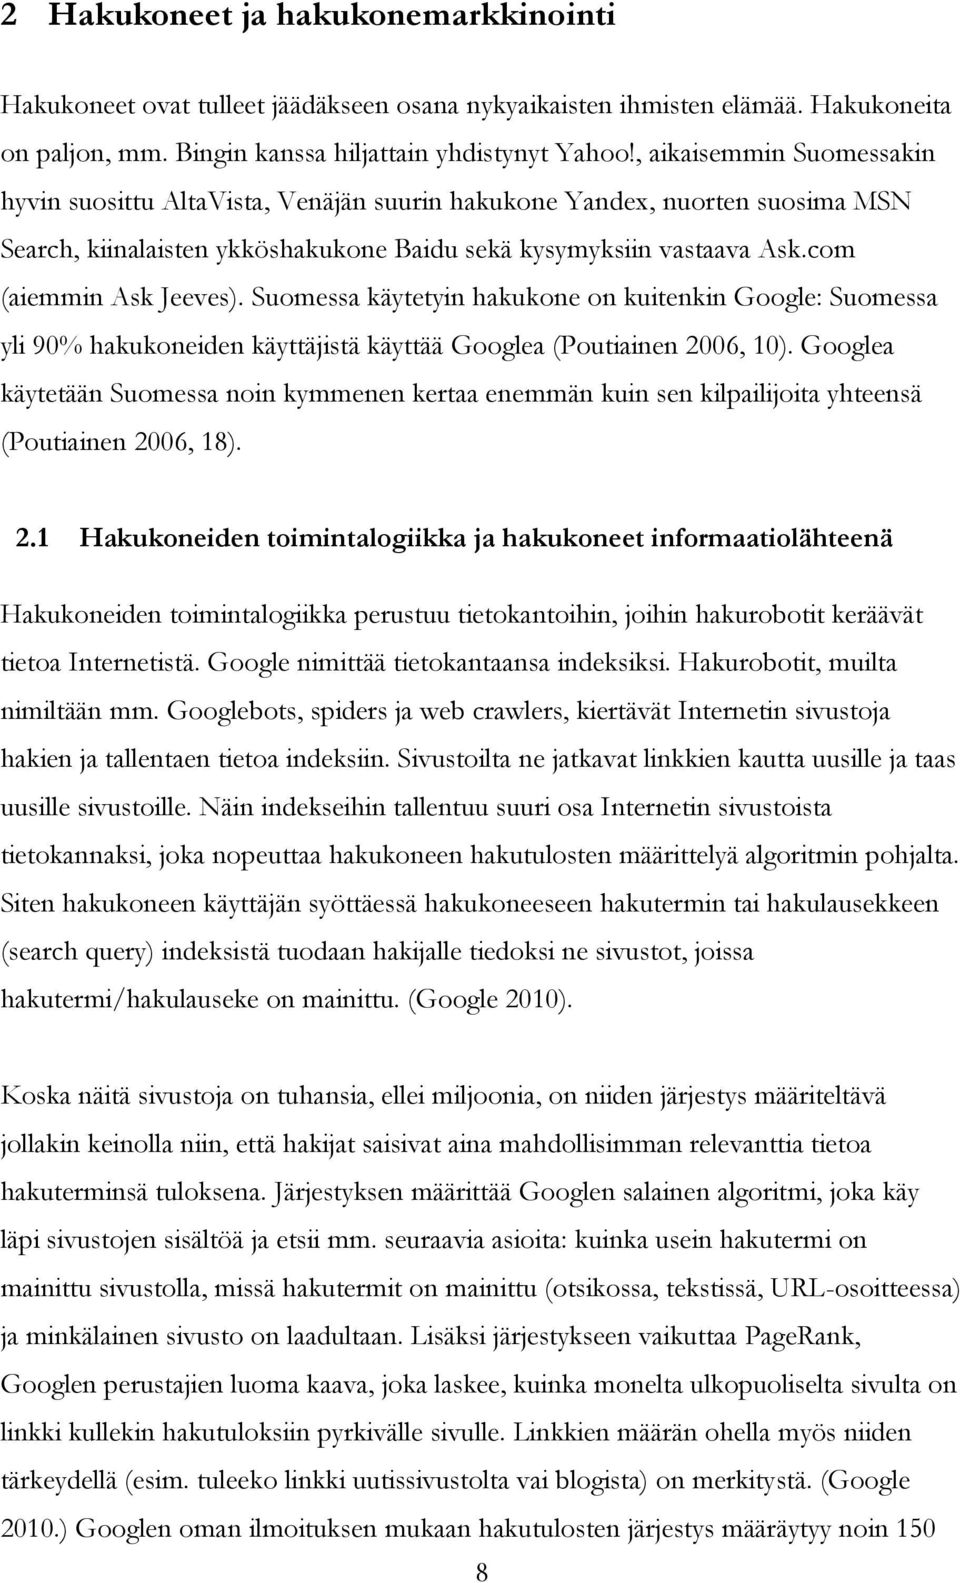 Suomessa käytetyin hakukone on kuitenkin Google: Suomessa yli 90% hakukoneiden käyttäjistä käyttää Googlea (Poutiainen 2006, 10).